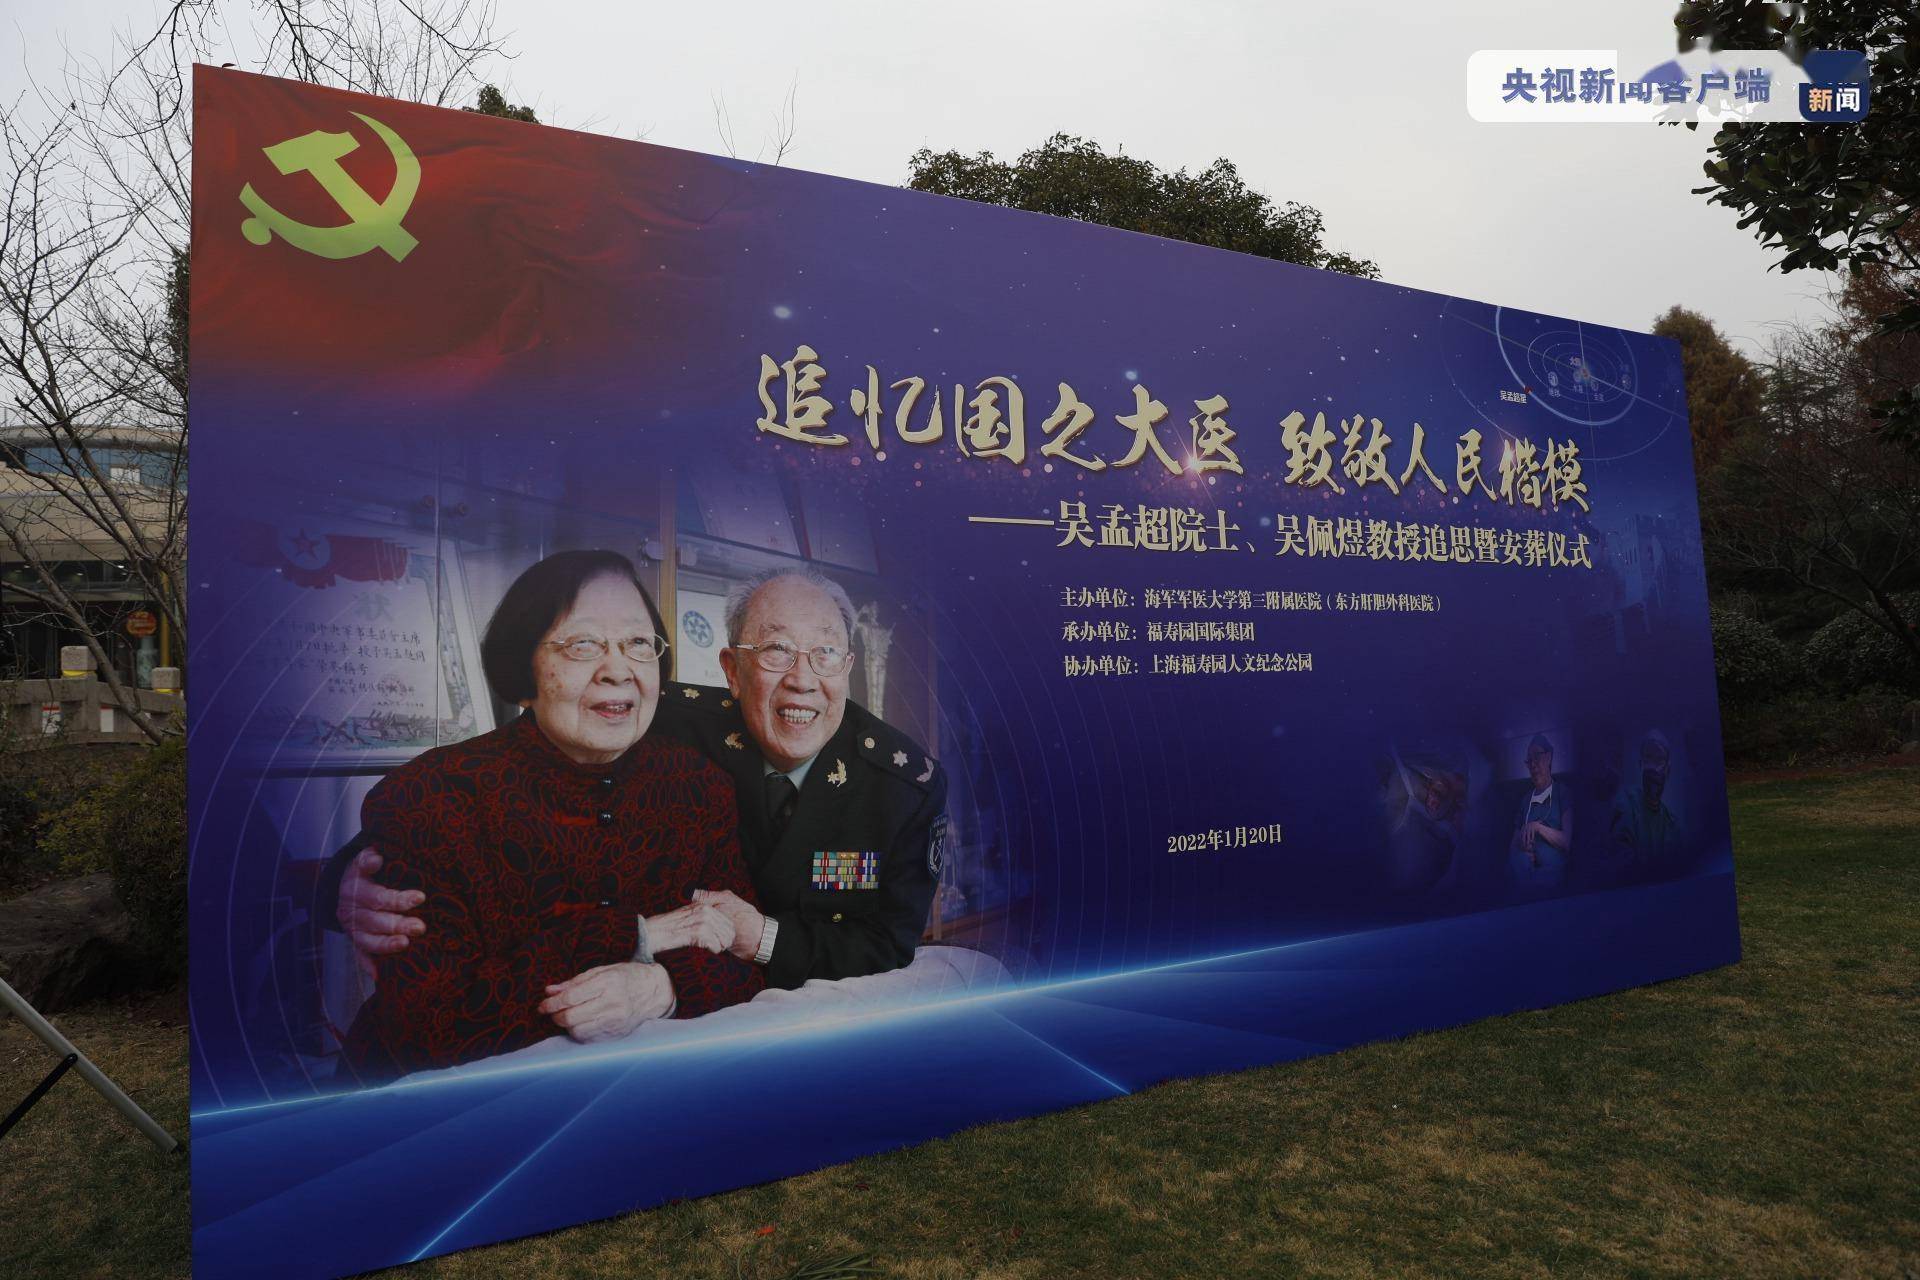 国家|吴孟超院士、吴佩煜教授追思暨安葬仪式在上海举行